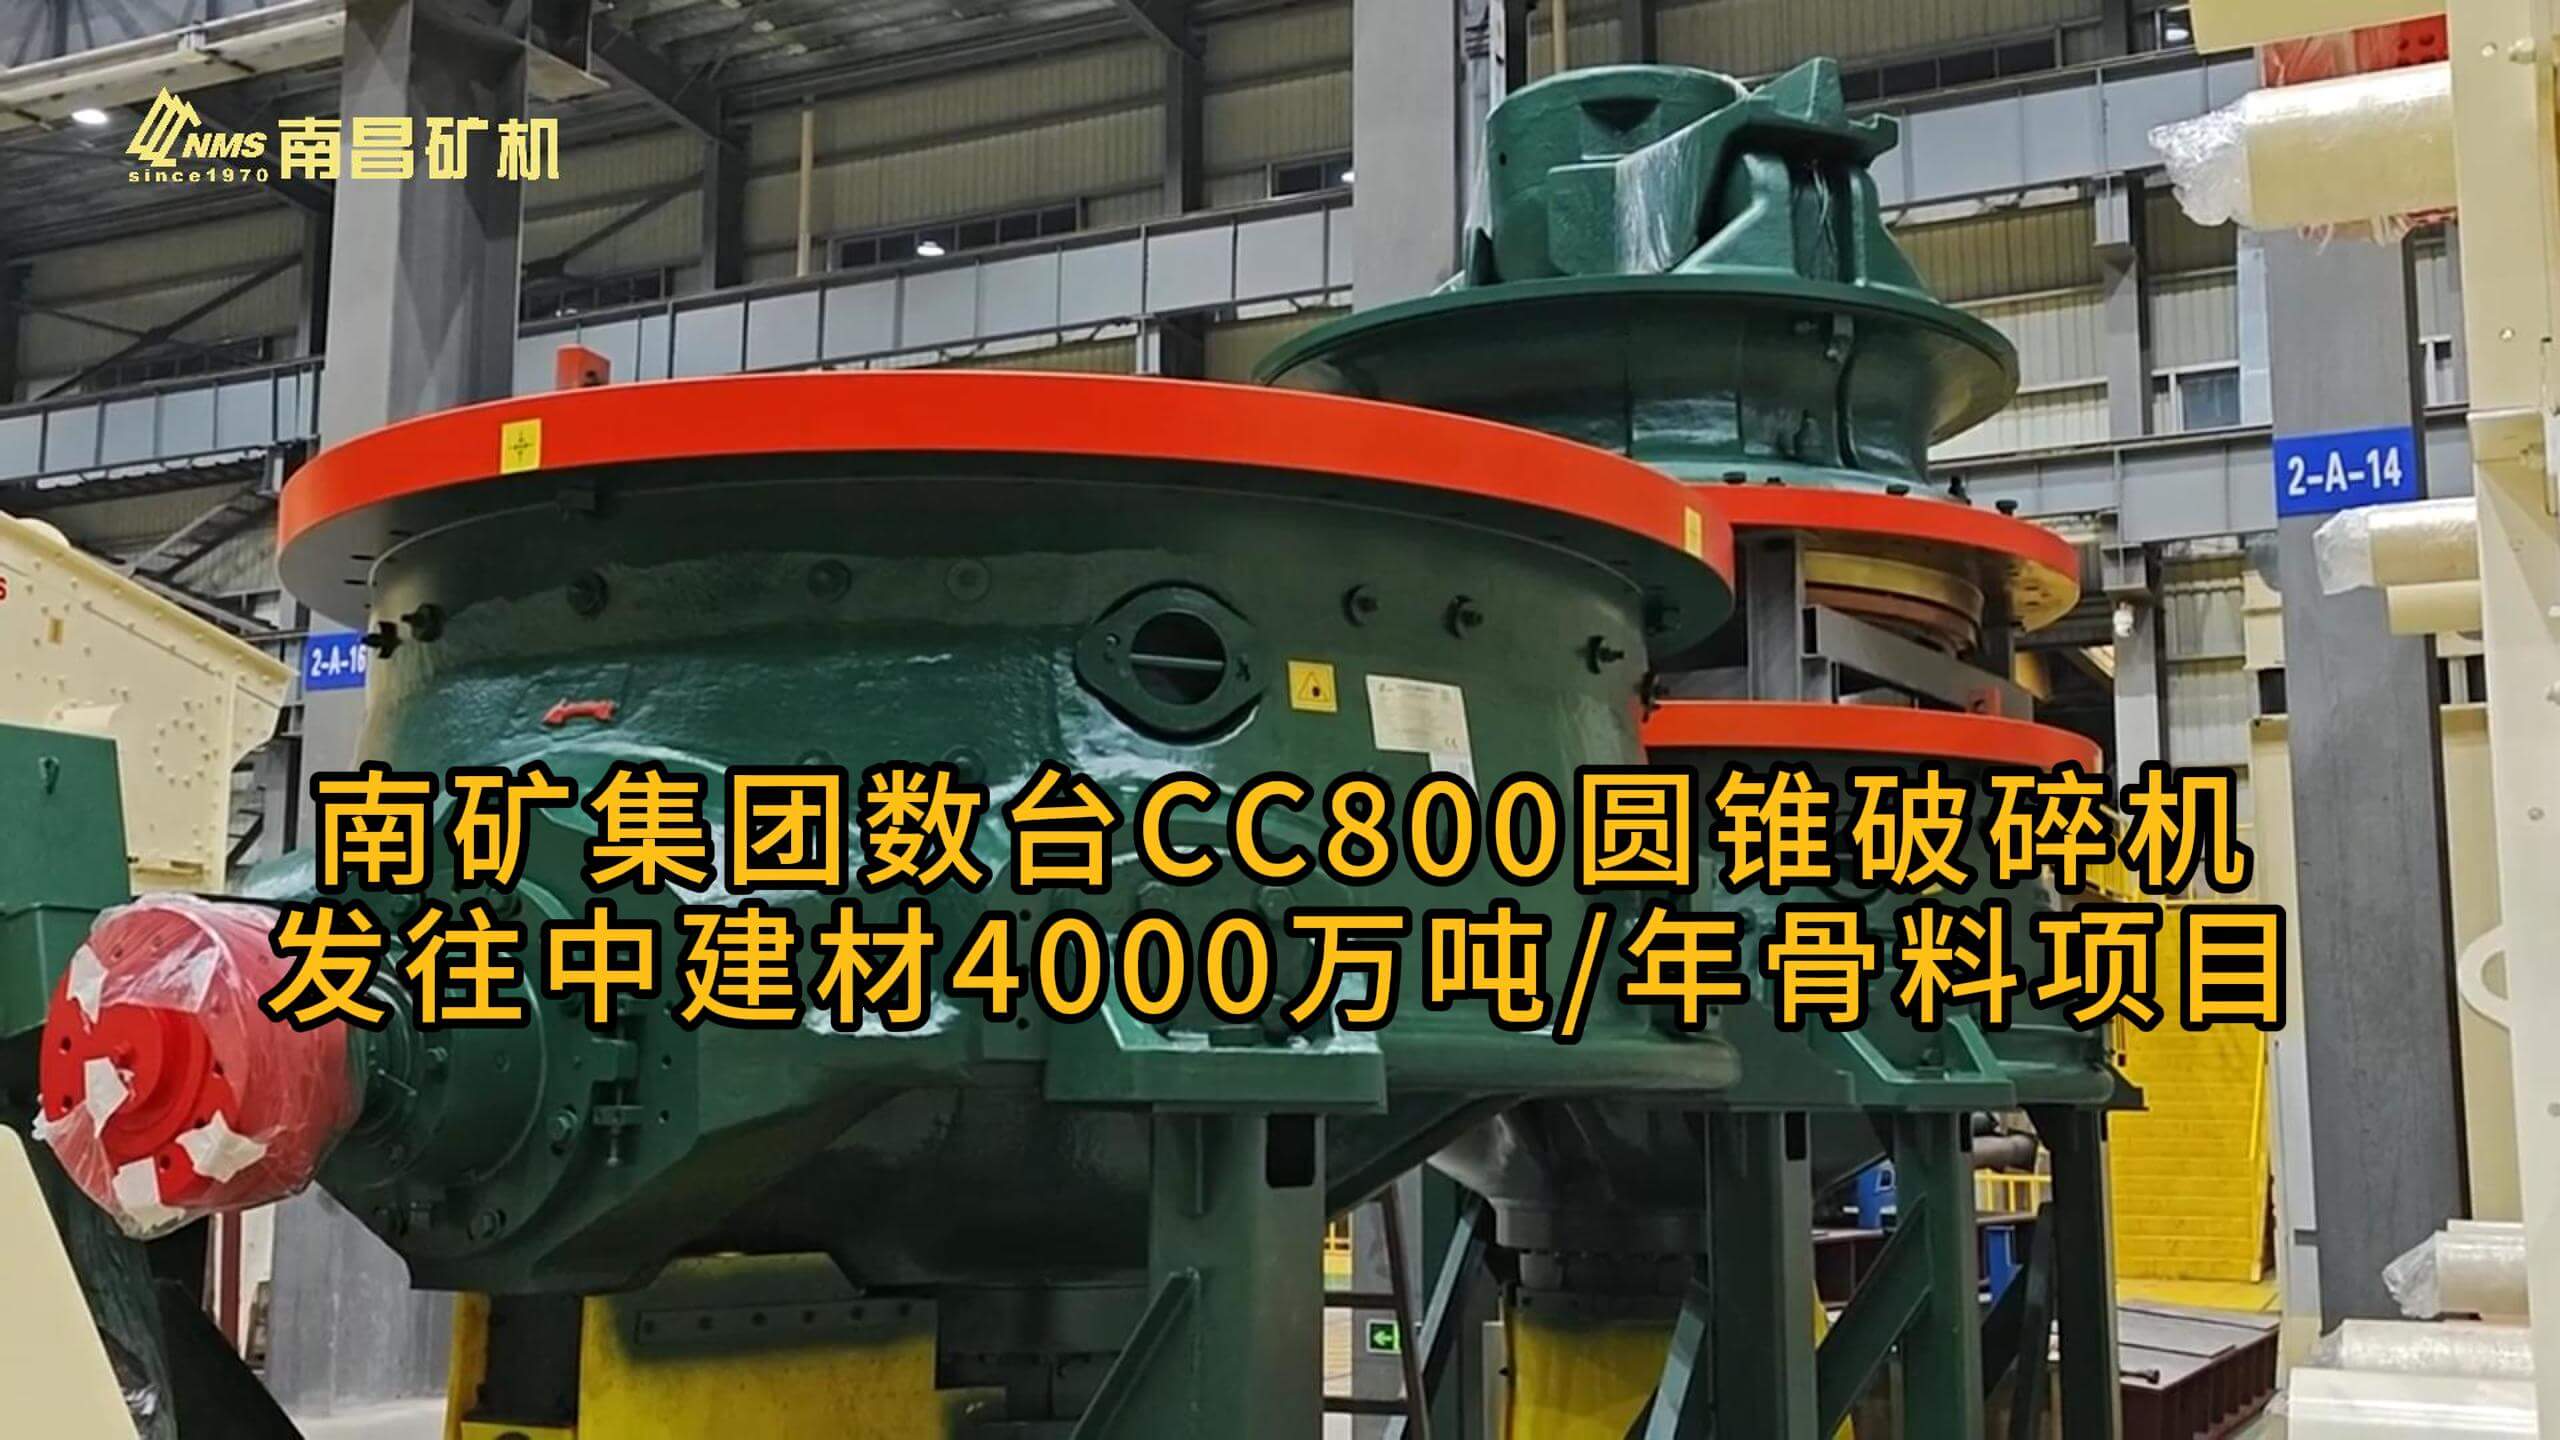 南矿集团数台CC800圆锥破碎机发往中建材4000万吨/年骨料项目